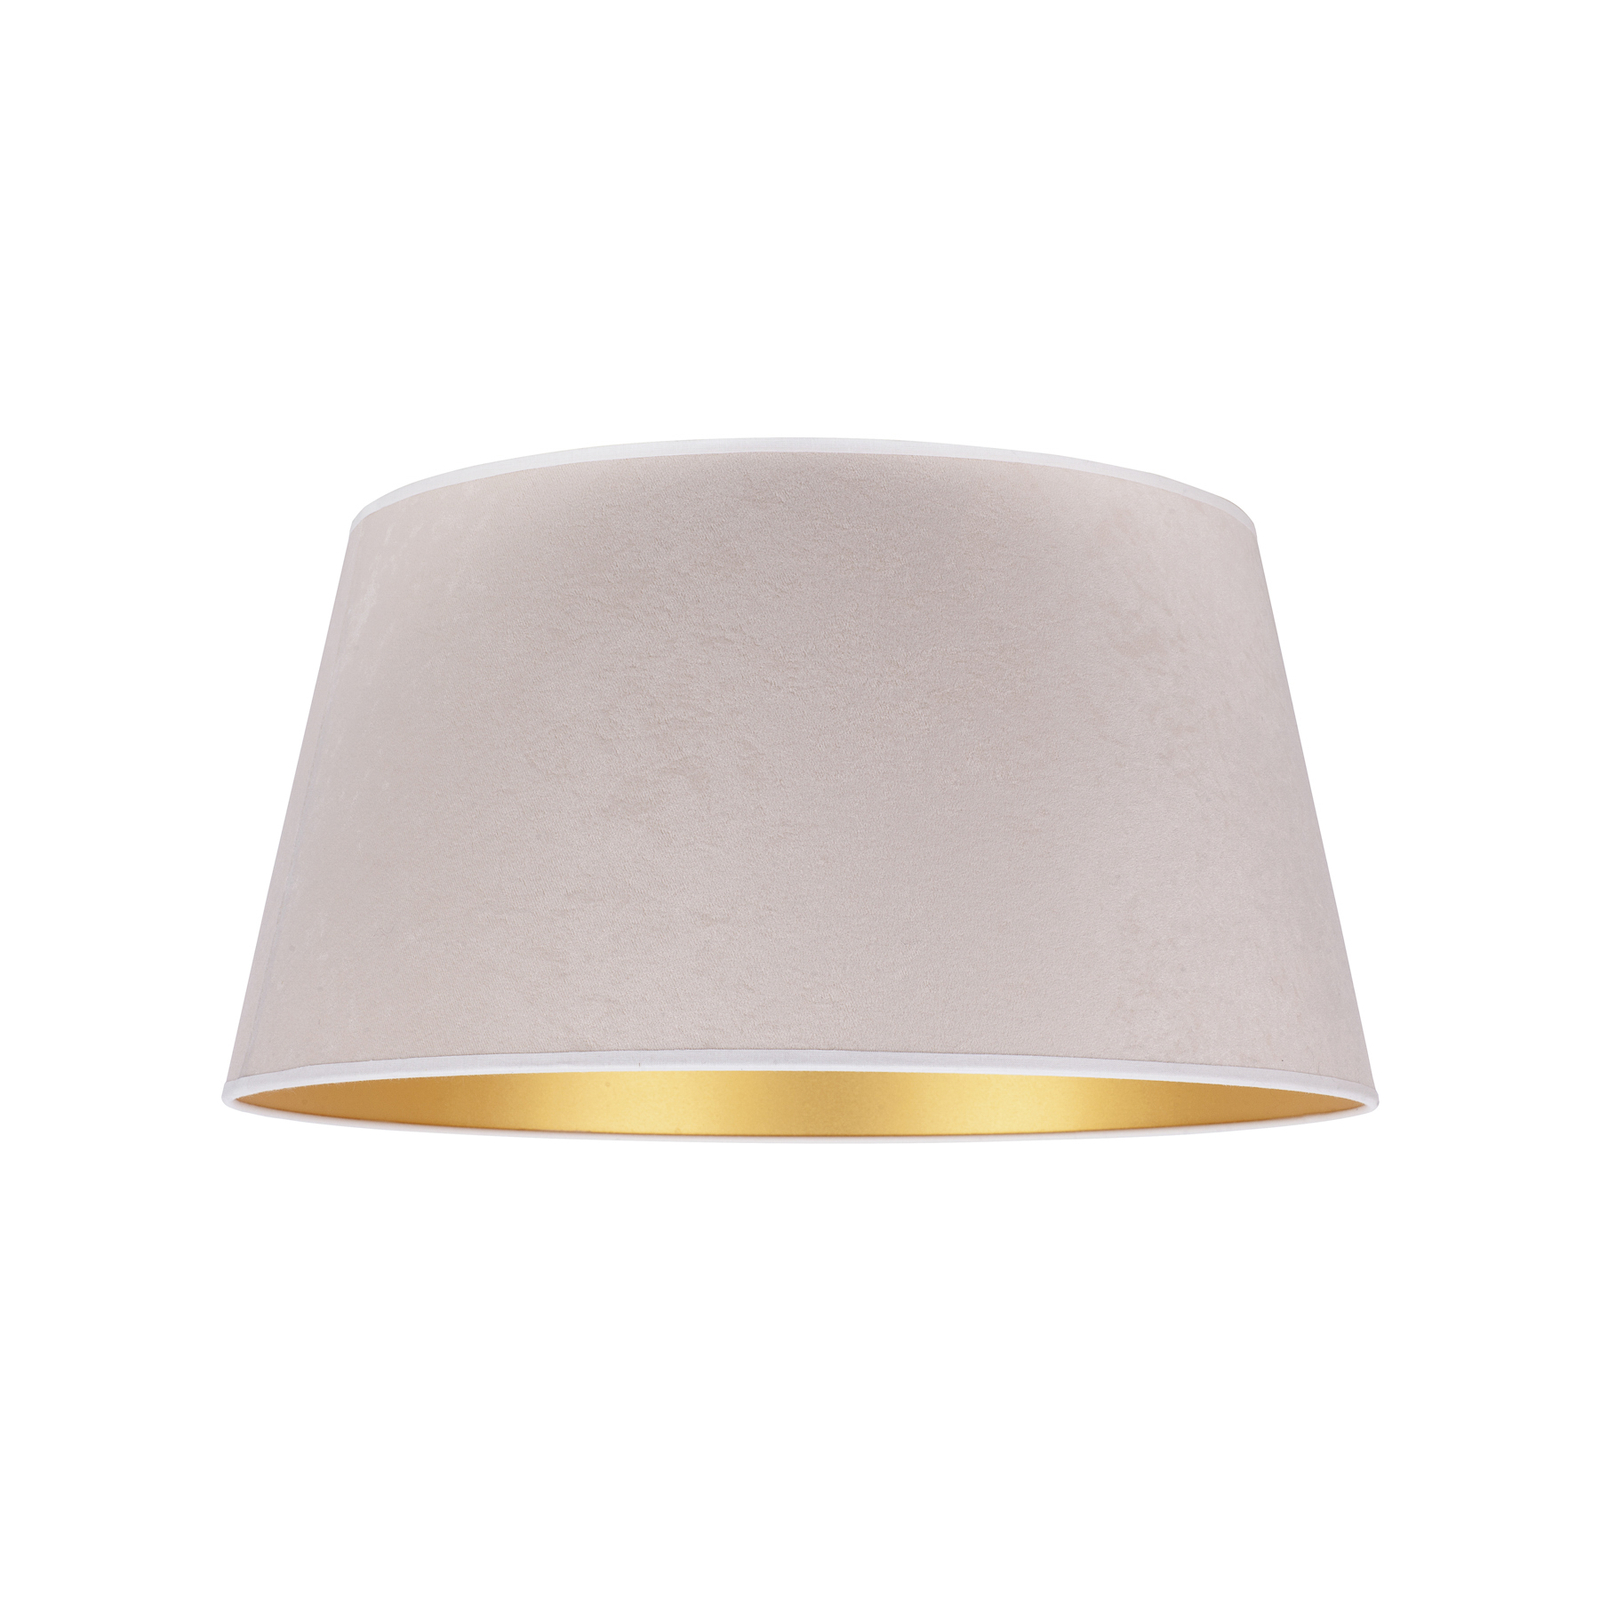 Cone lámpaernyő 22,5 cm magas, ekrü/arany